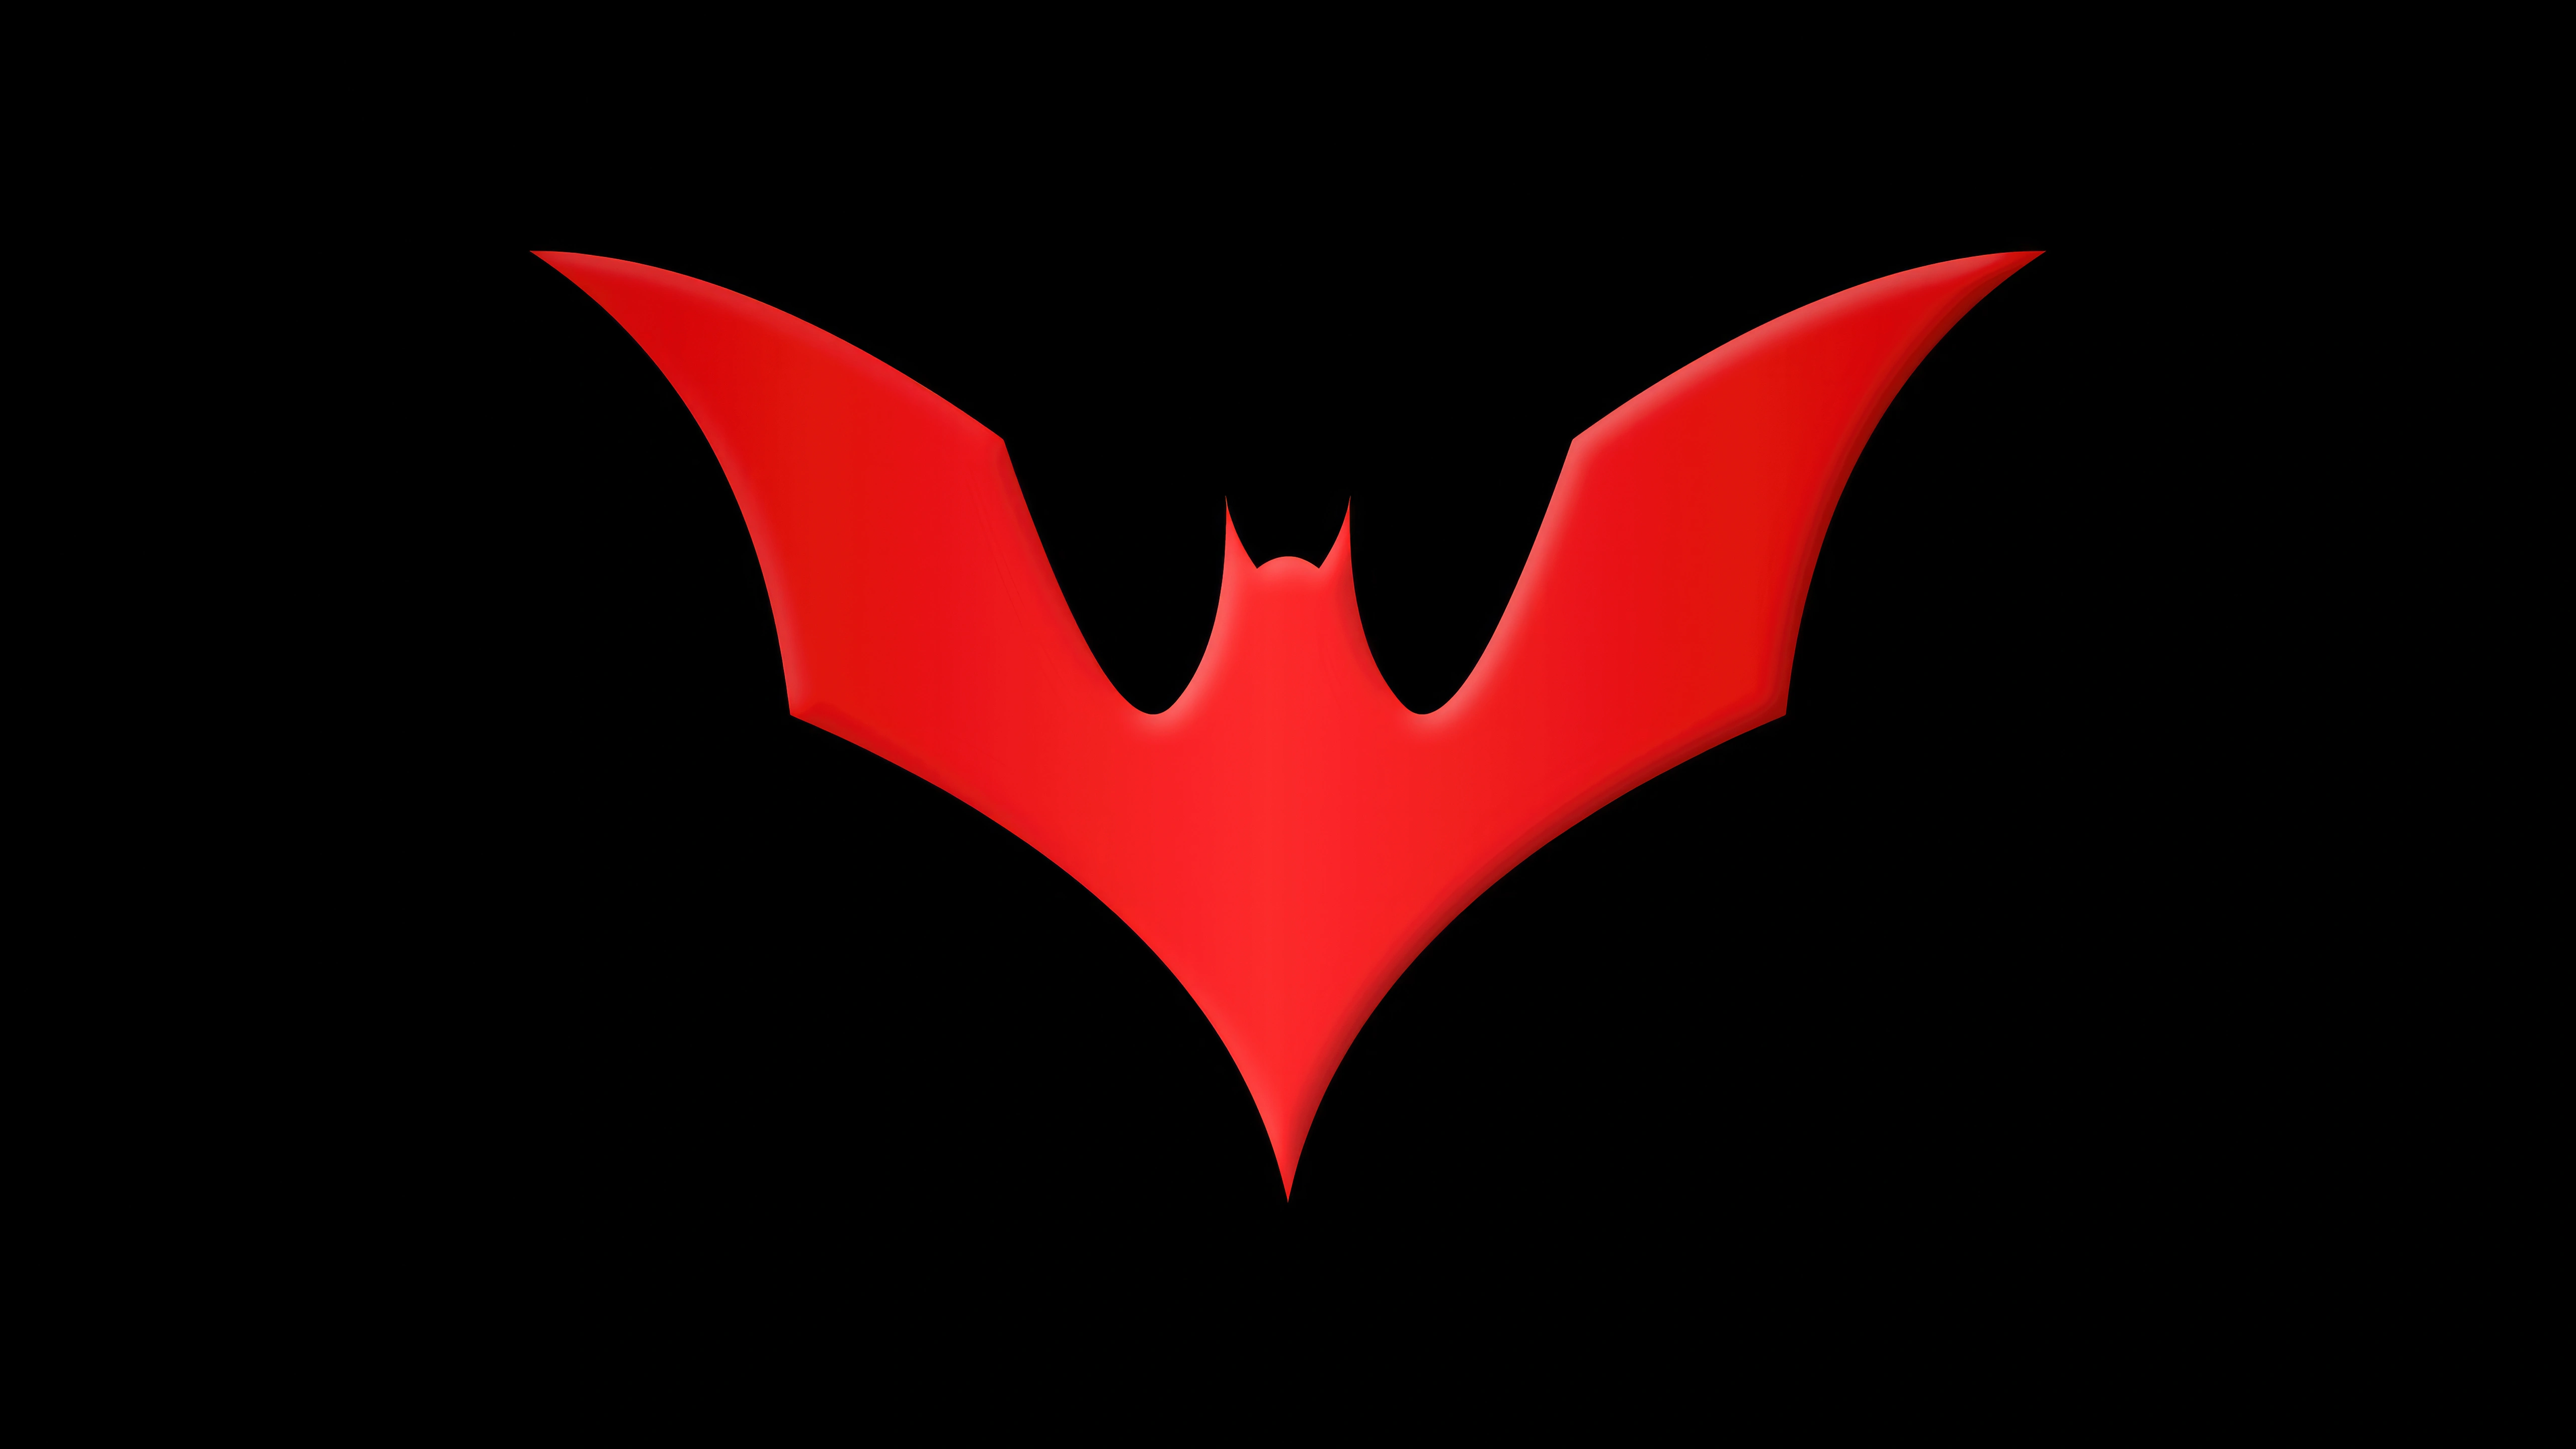 batman beyond logo sh.jpg